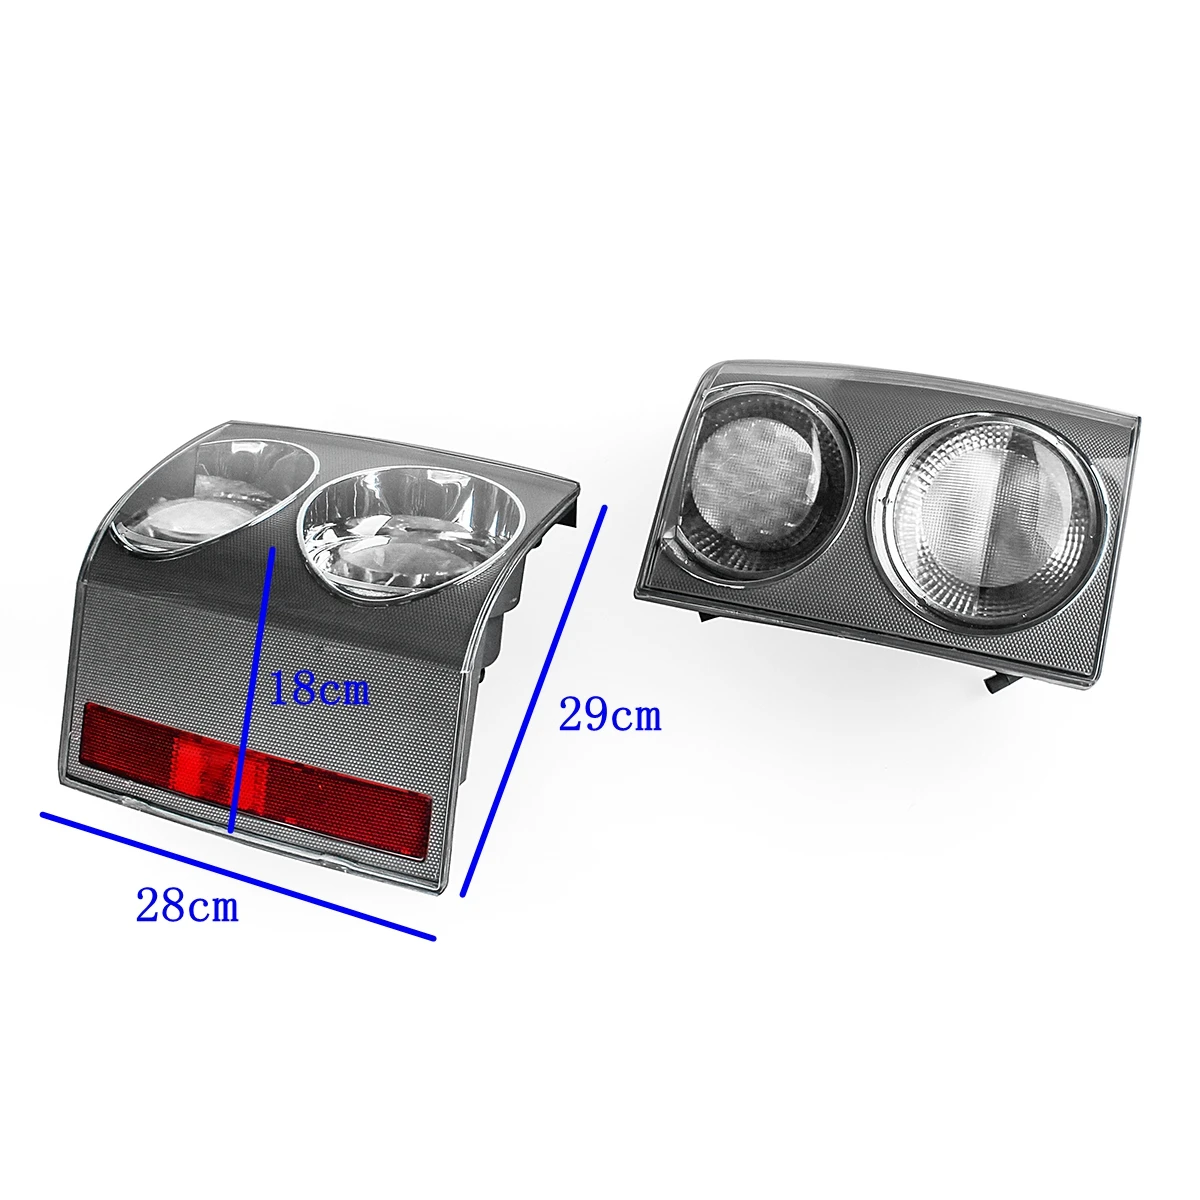 1 пара Автомобильный задний тормозной Стоп-светильник для Land Rover RANGE Rover VOGUE L322 2002 2003 2004 2005-2009 задние фонари отражатели аксессуары